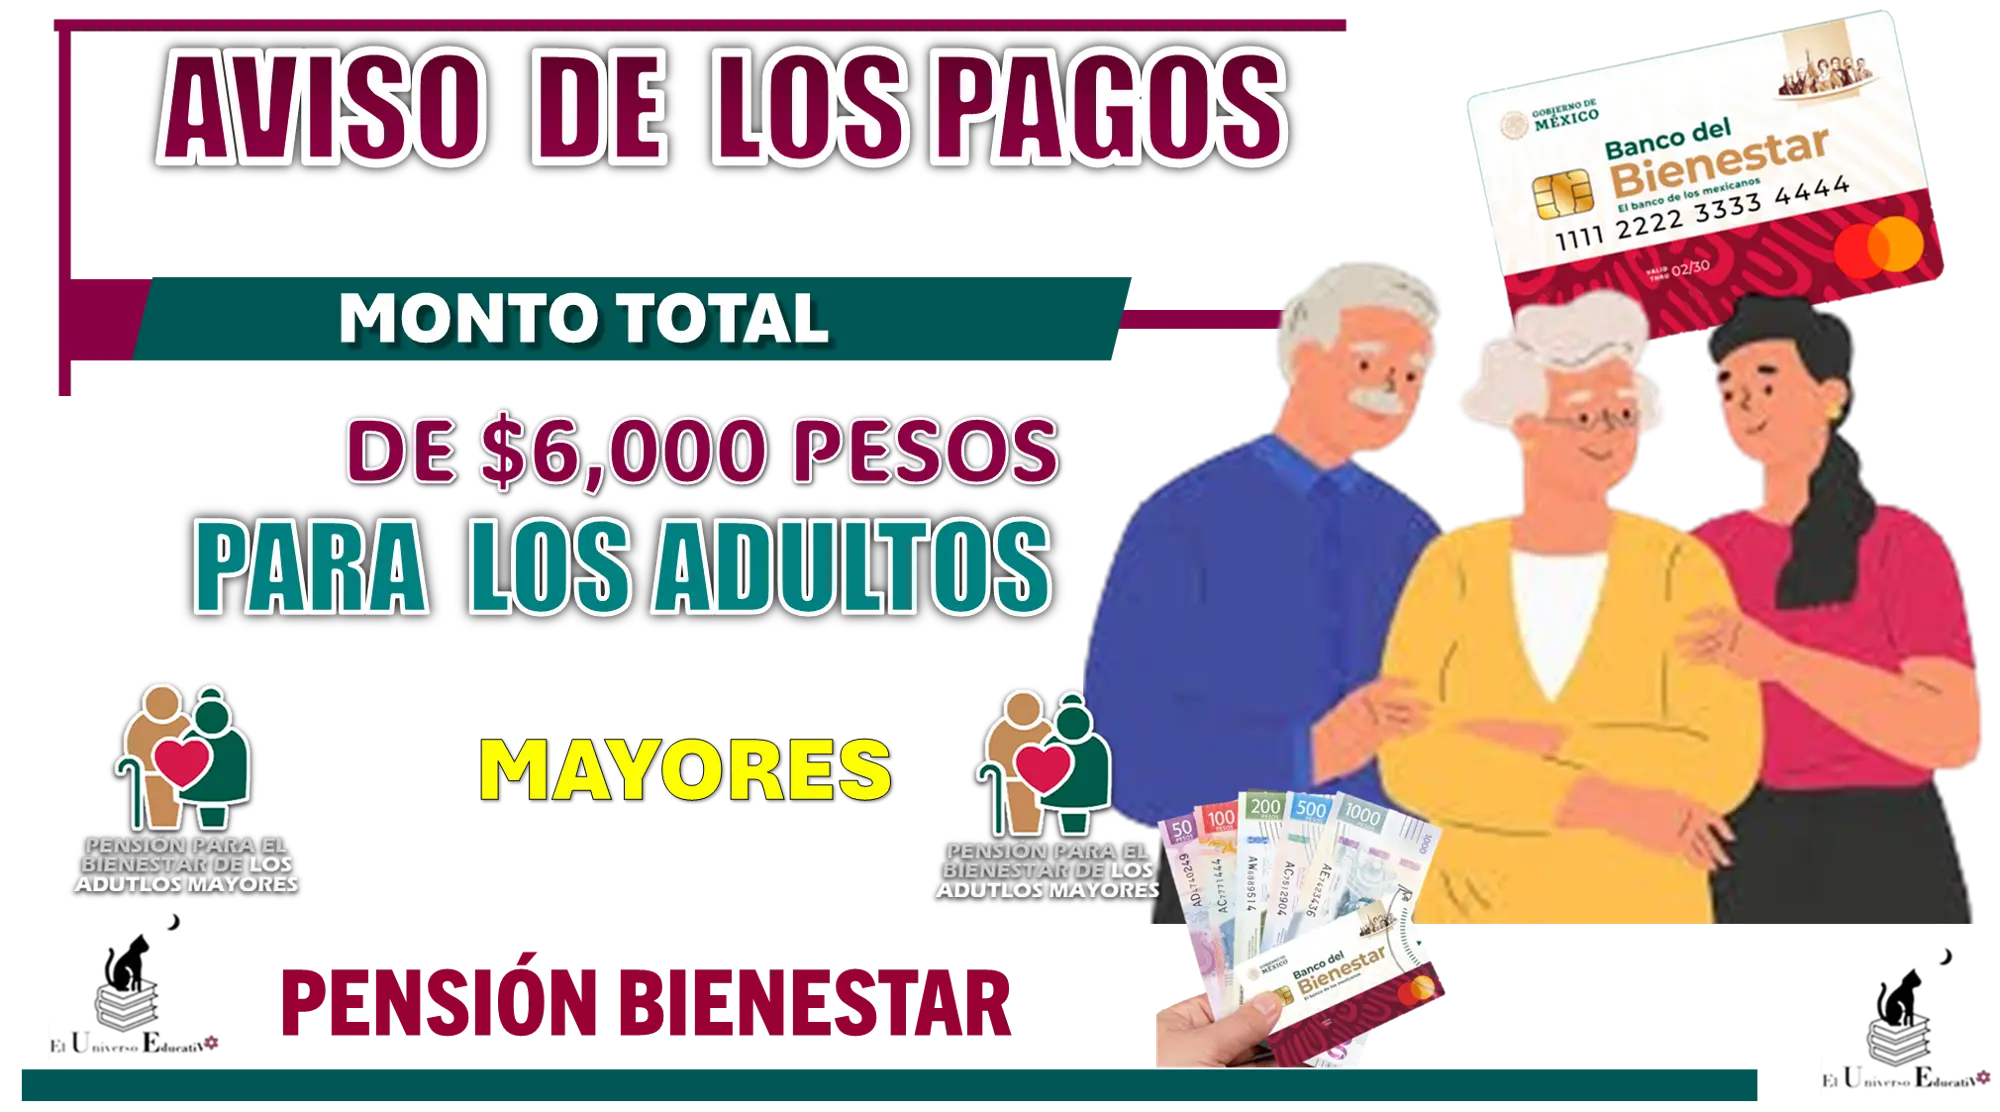 AVISO DE LOS PAGOS | MONTO TOTAL DE $6,000 PESOS PARA LOS ADULTOS MAYORES DE LA PENSIÓN BIENESTAR 